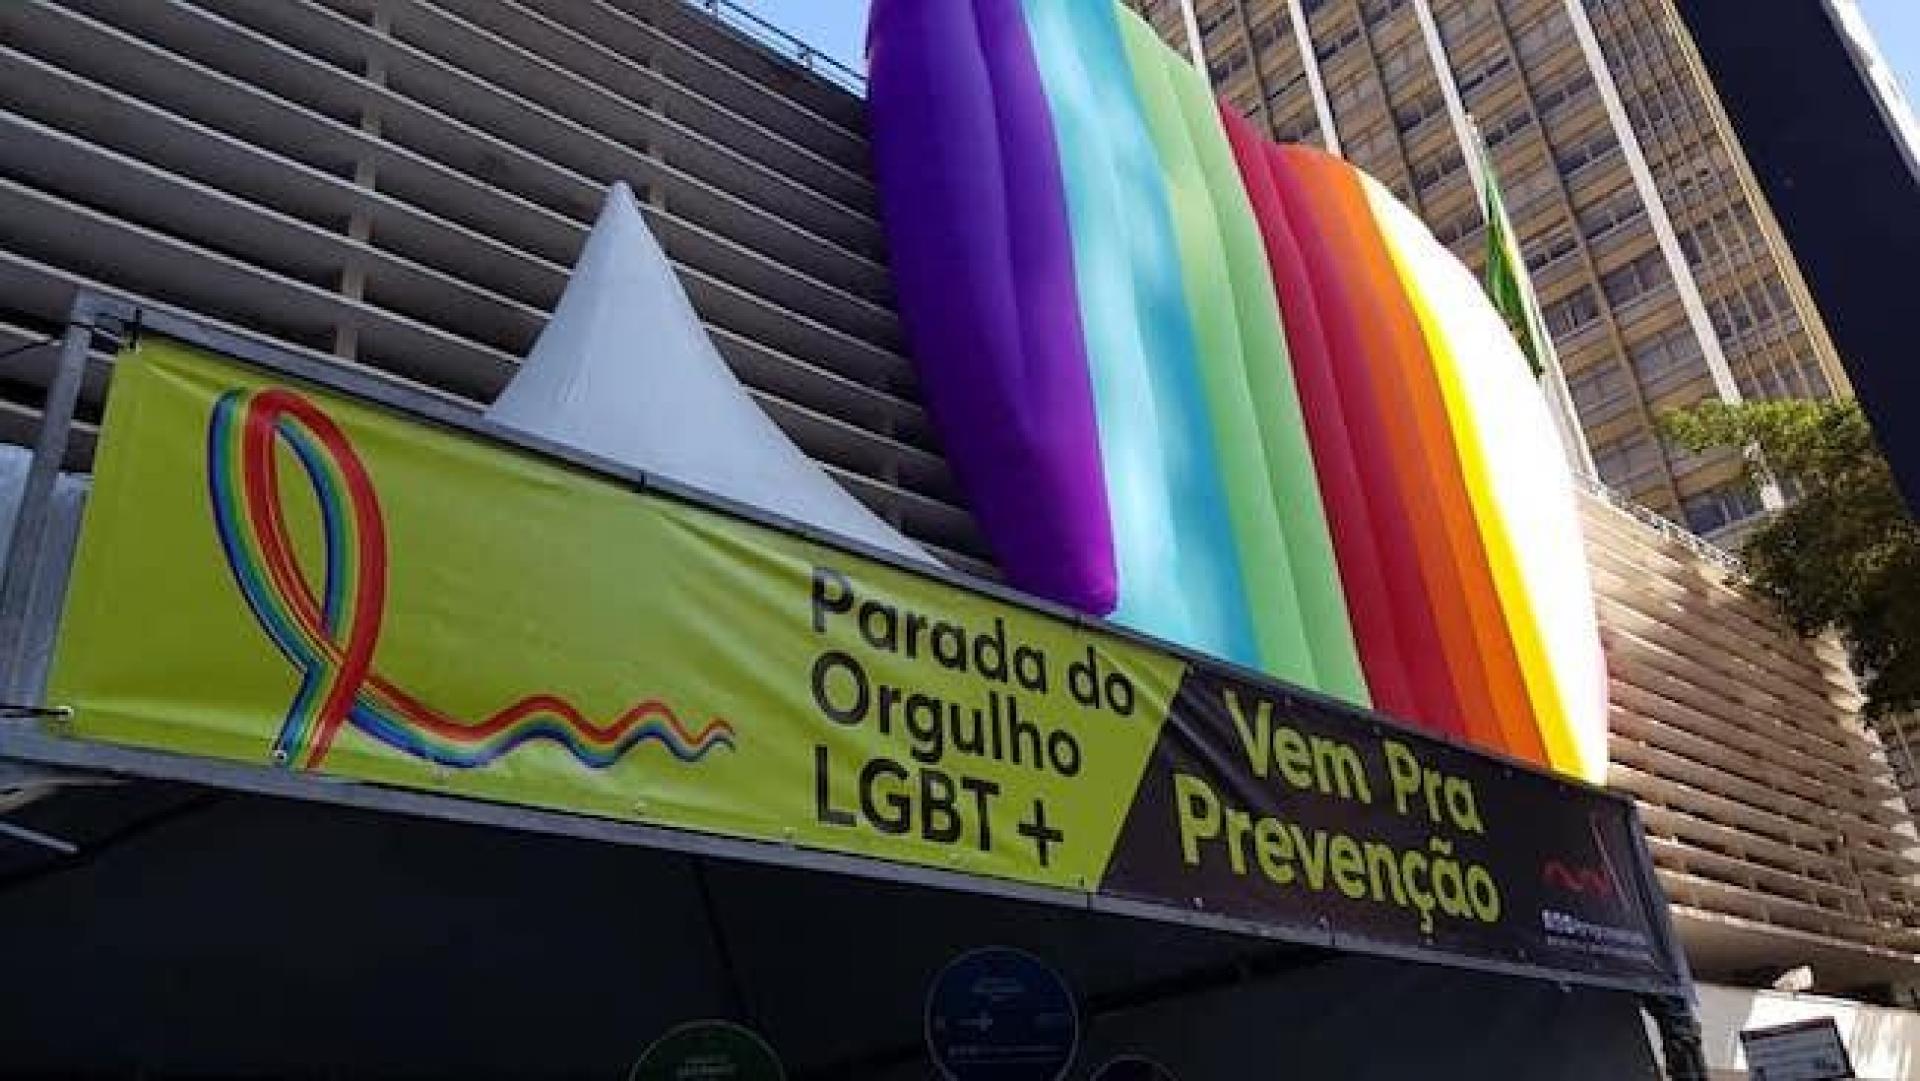 Coordenadoria de IST/Aids prepara ações para a Semana do Orgulho LGBT+ de SP